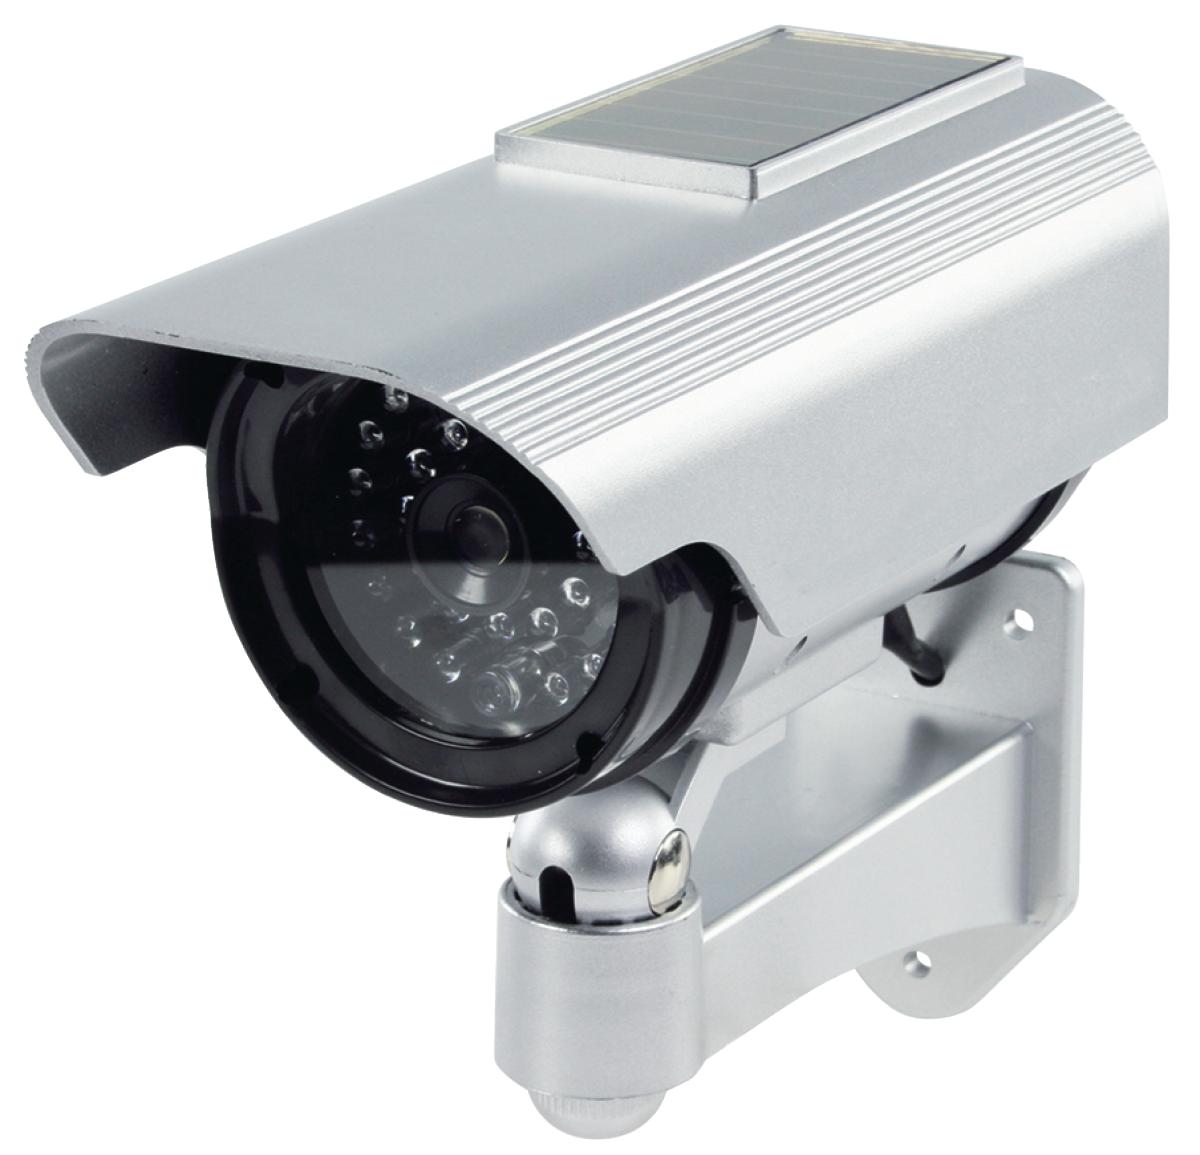 E44-Camera factice exterieure avec panneau solaire et led clignotante à  24,90 €